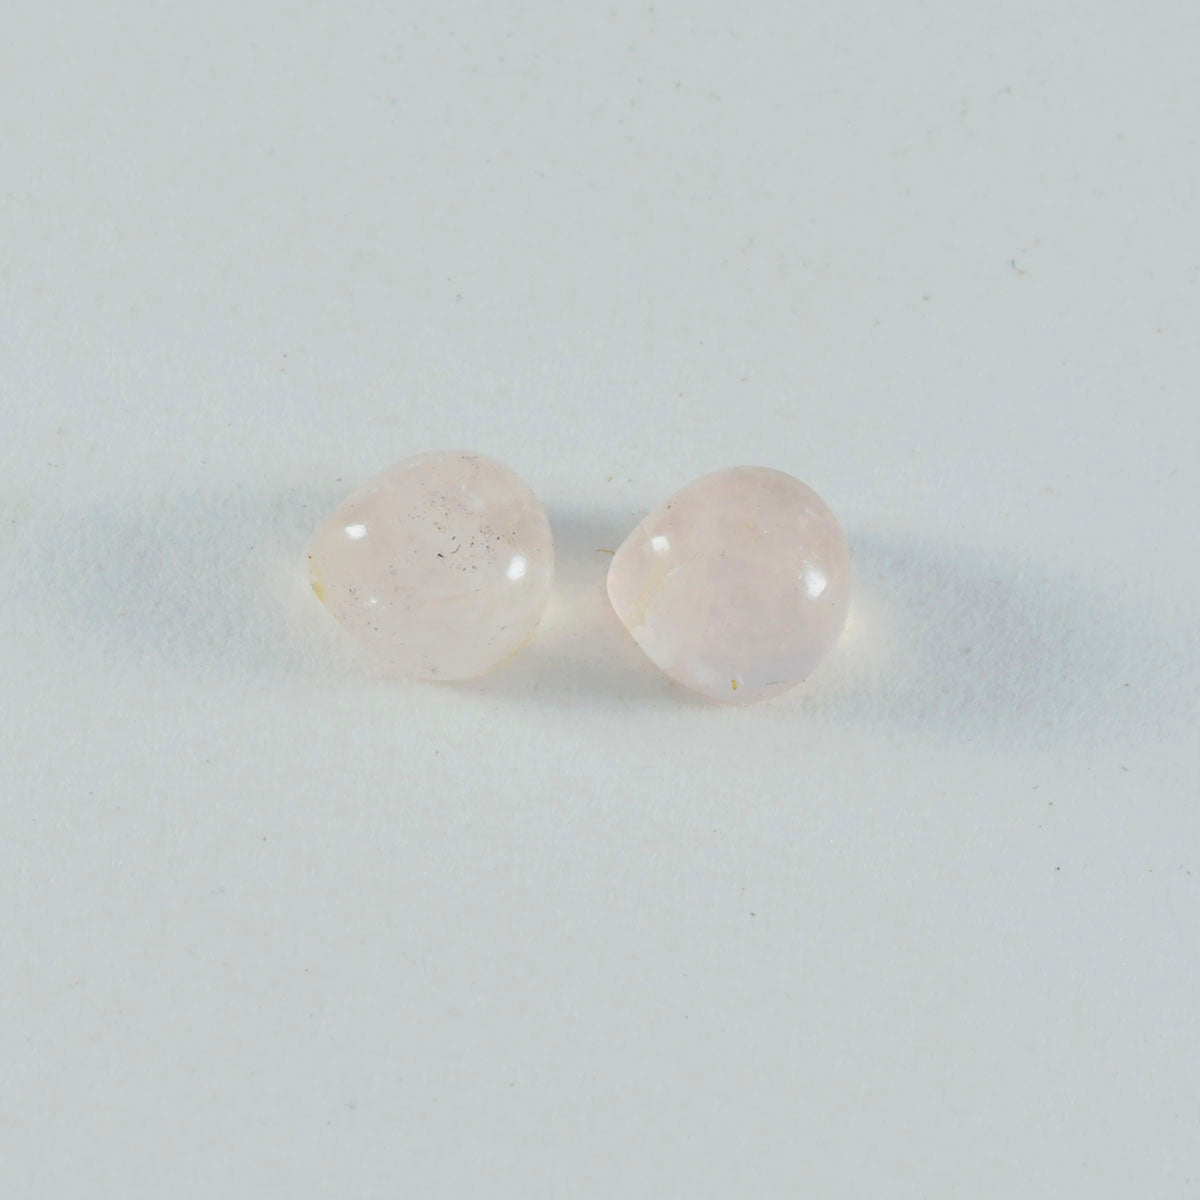 Riyogems, 1 pieza, cabujón de cuarzo rosa, 5x5mm, forma de corazón, piedra suelta de excelente calidad